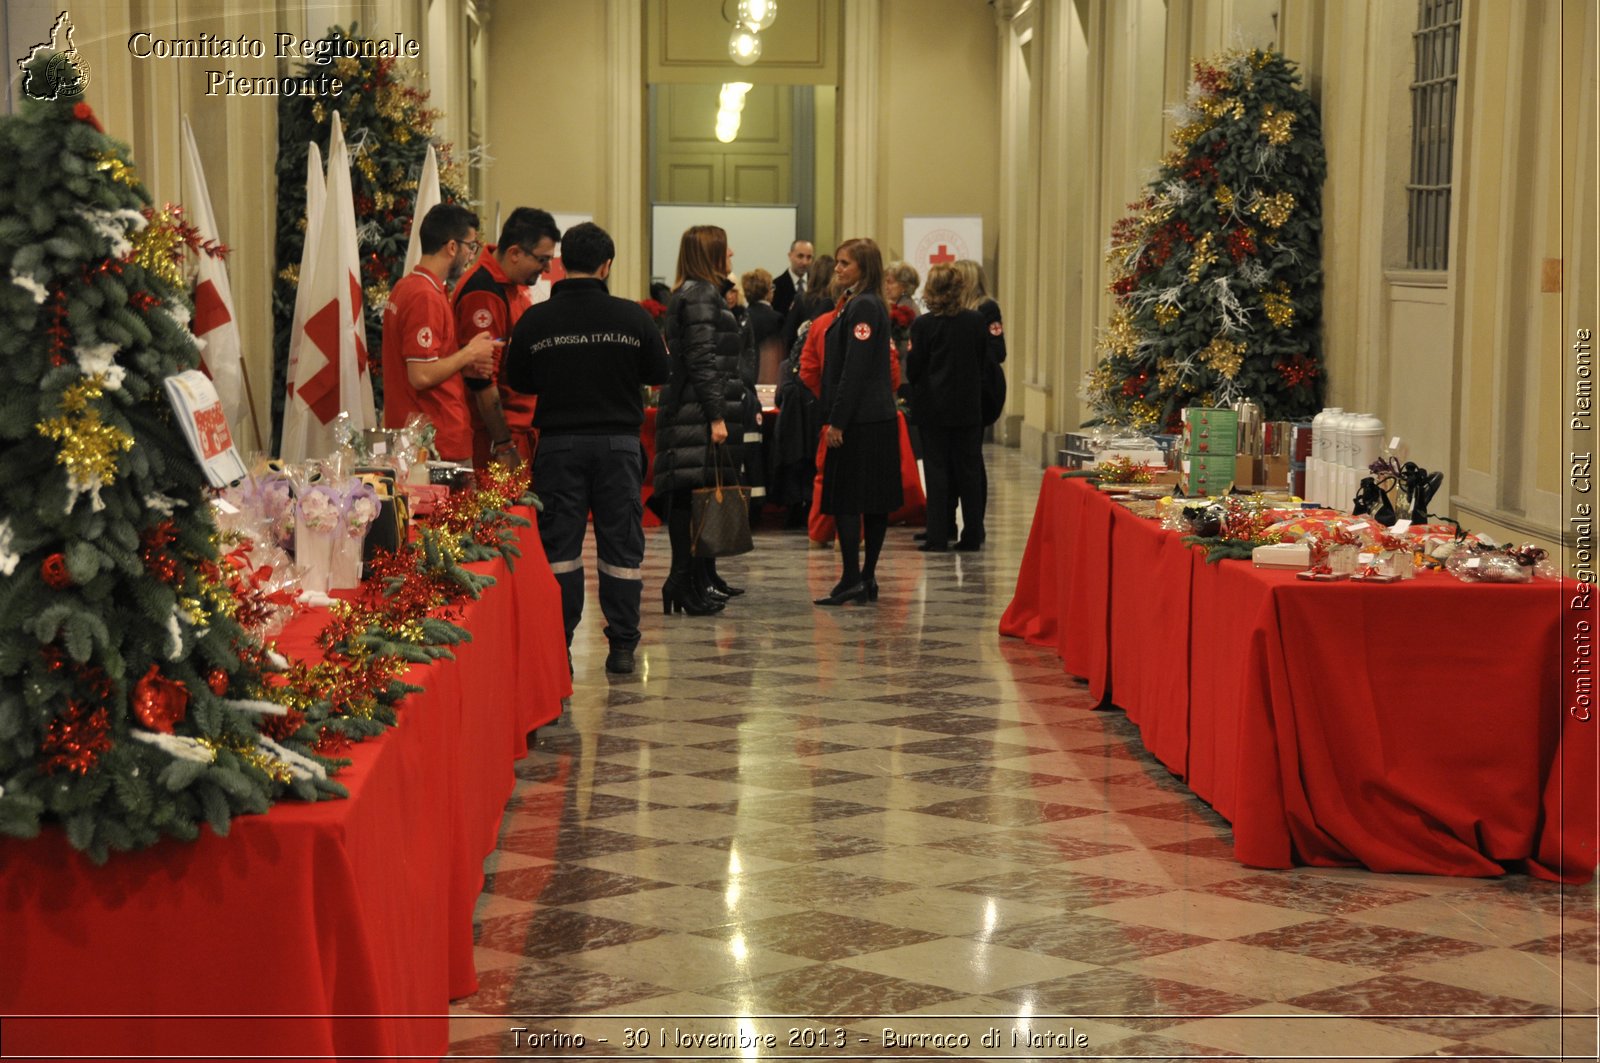 Torino - 30 Novembrebre 2013 - Burraco di Natale - Comitato Regionale del Piemonte